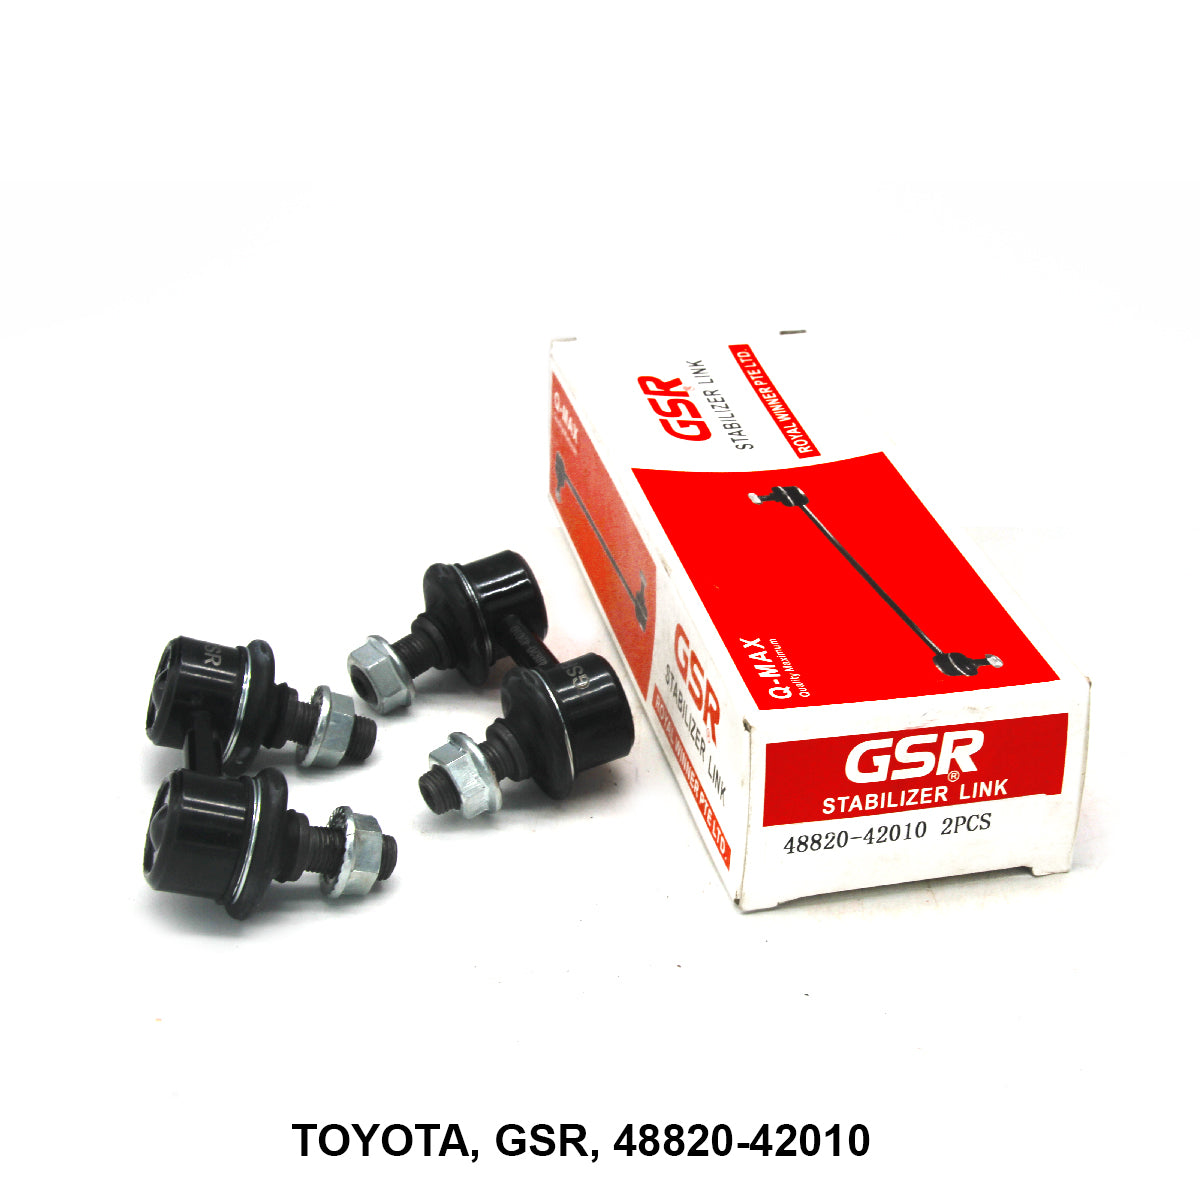 Stabilizer Link, GSR, 48820-42010 (005978)